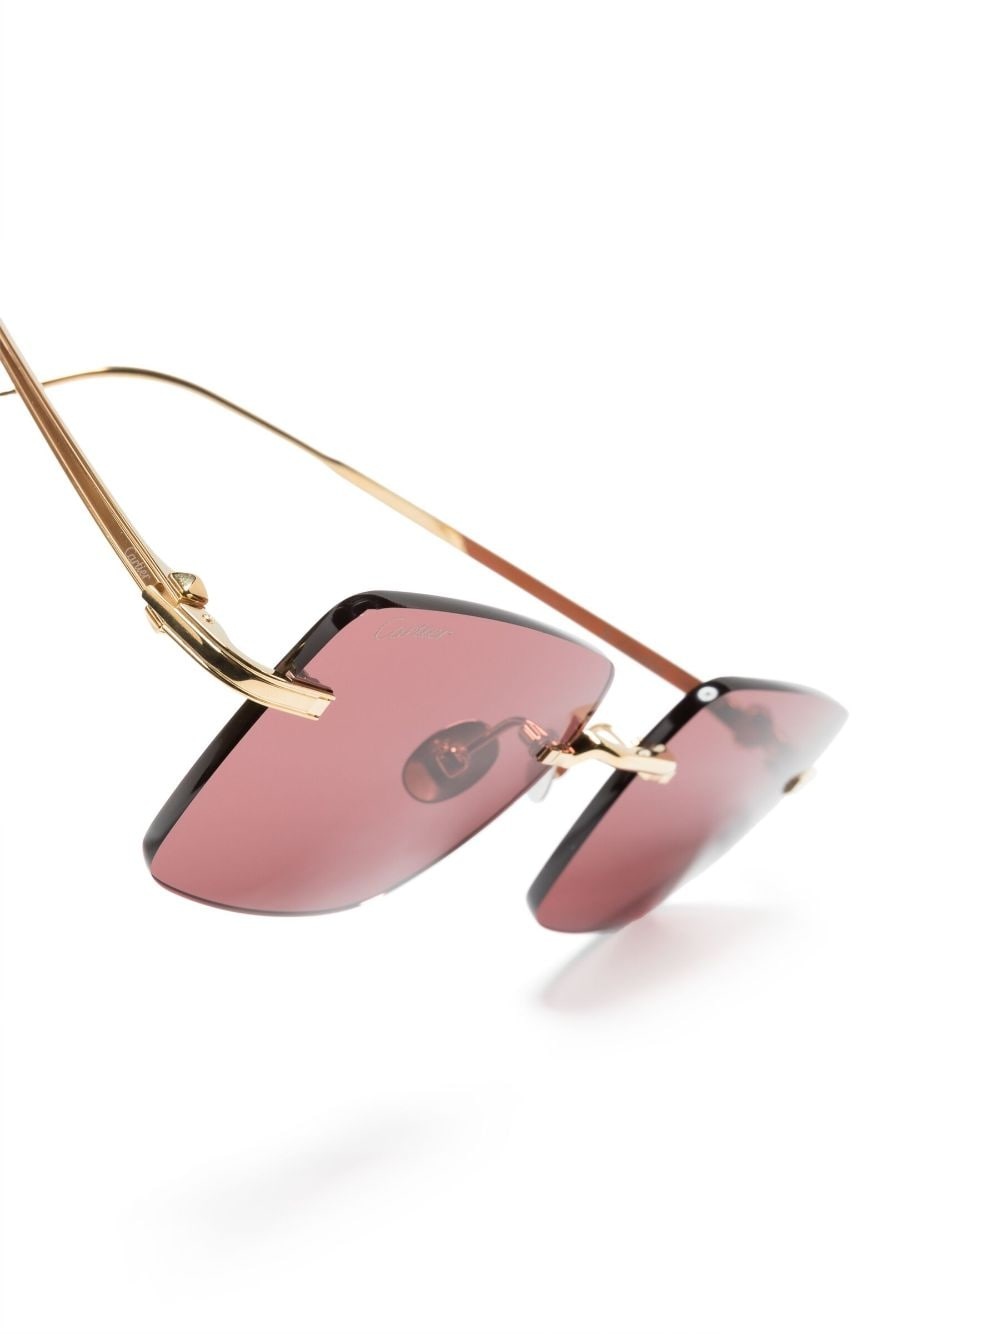 Signature C de Cartier Precious rectangular sunglasses - 3